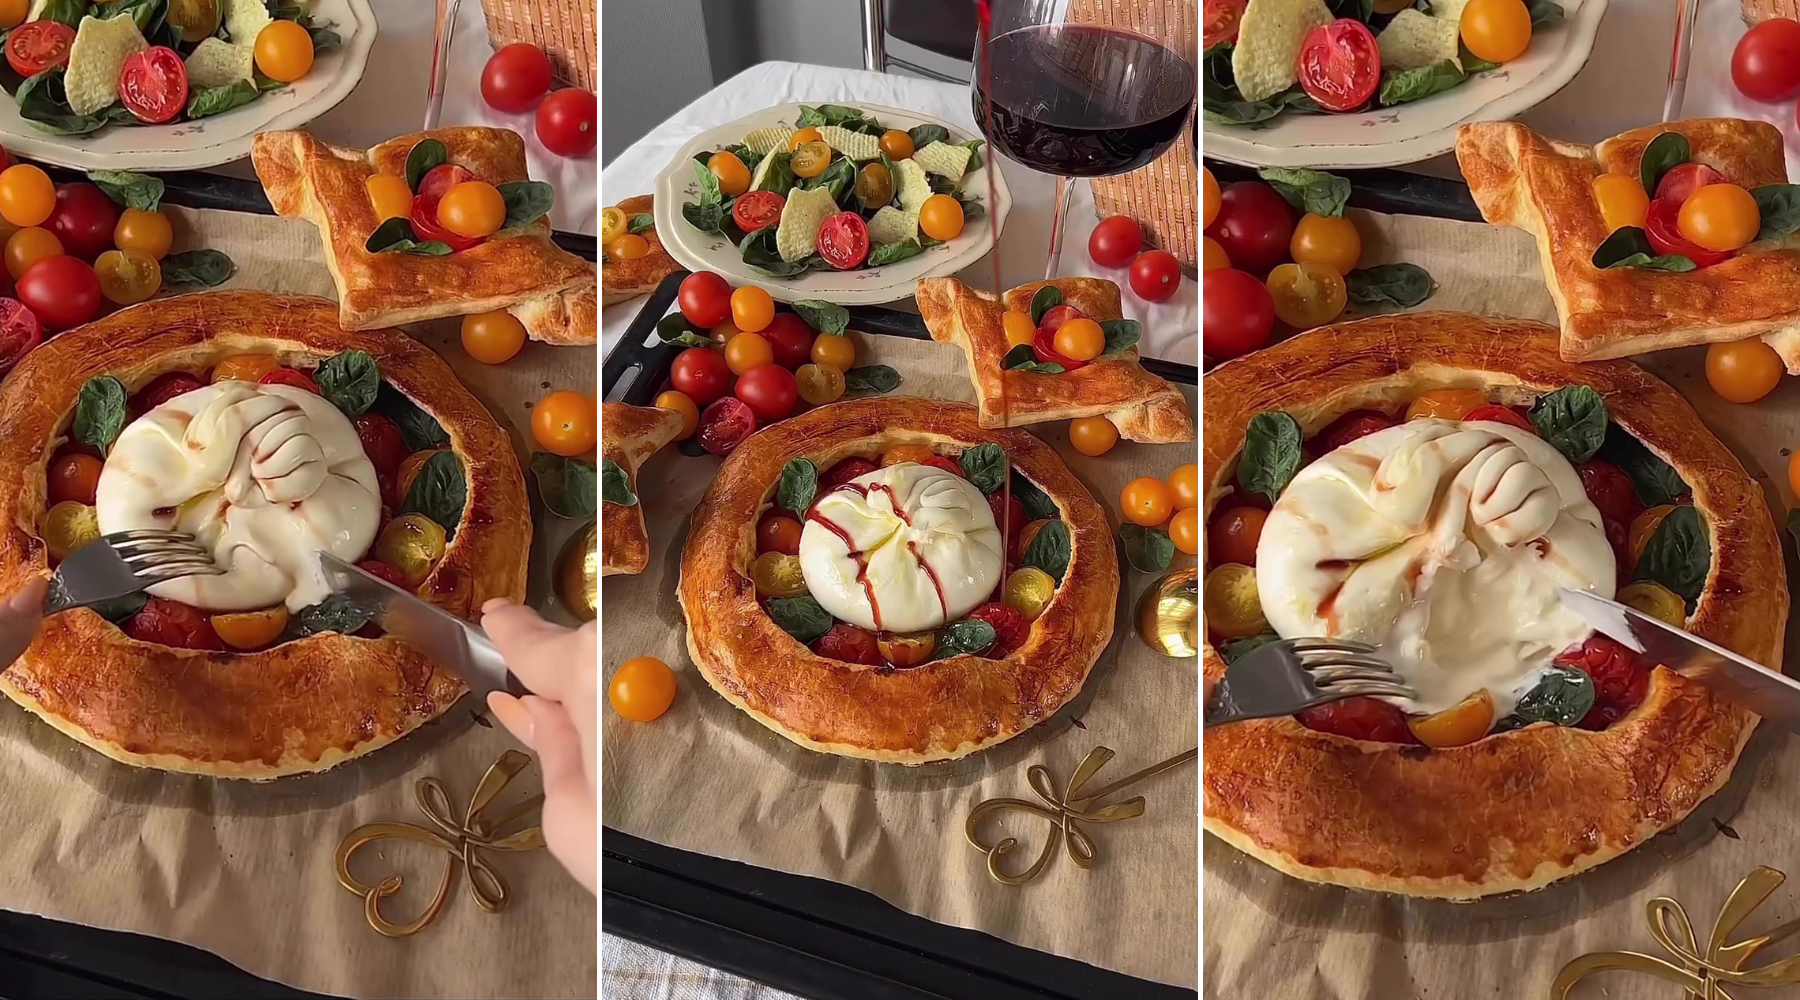 How to: Pica na malo drugačiji način – sa dodatkom burrata sira i čeri paradajza